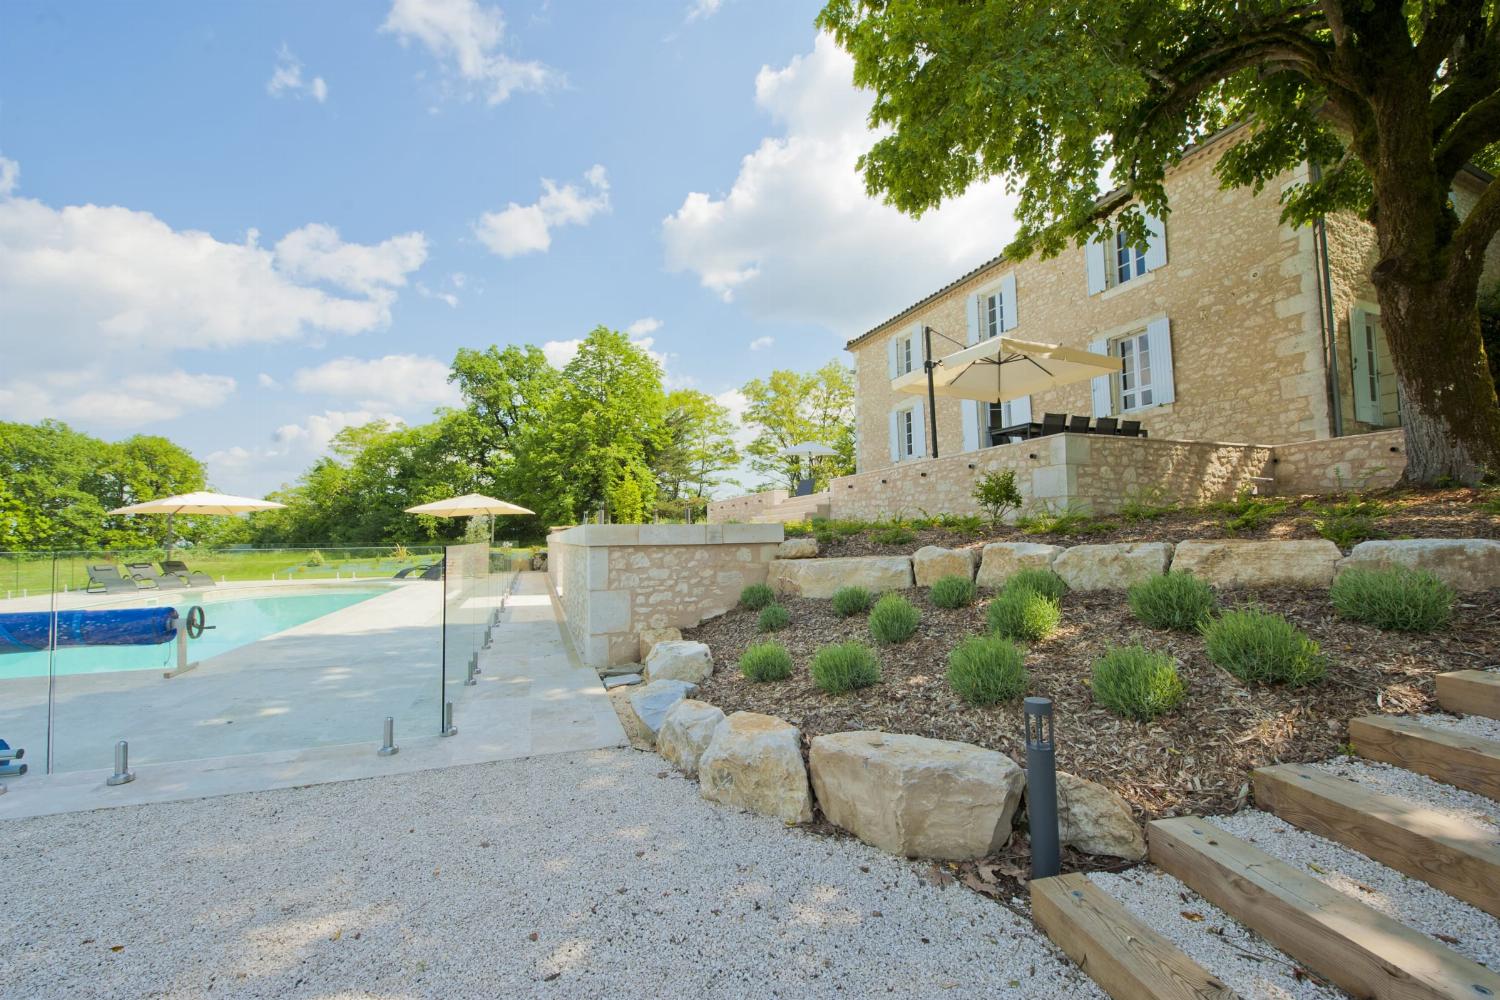 Location maison en Dordogne avec piscine privée chauffée